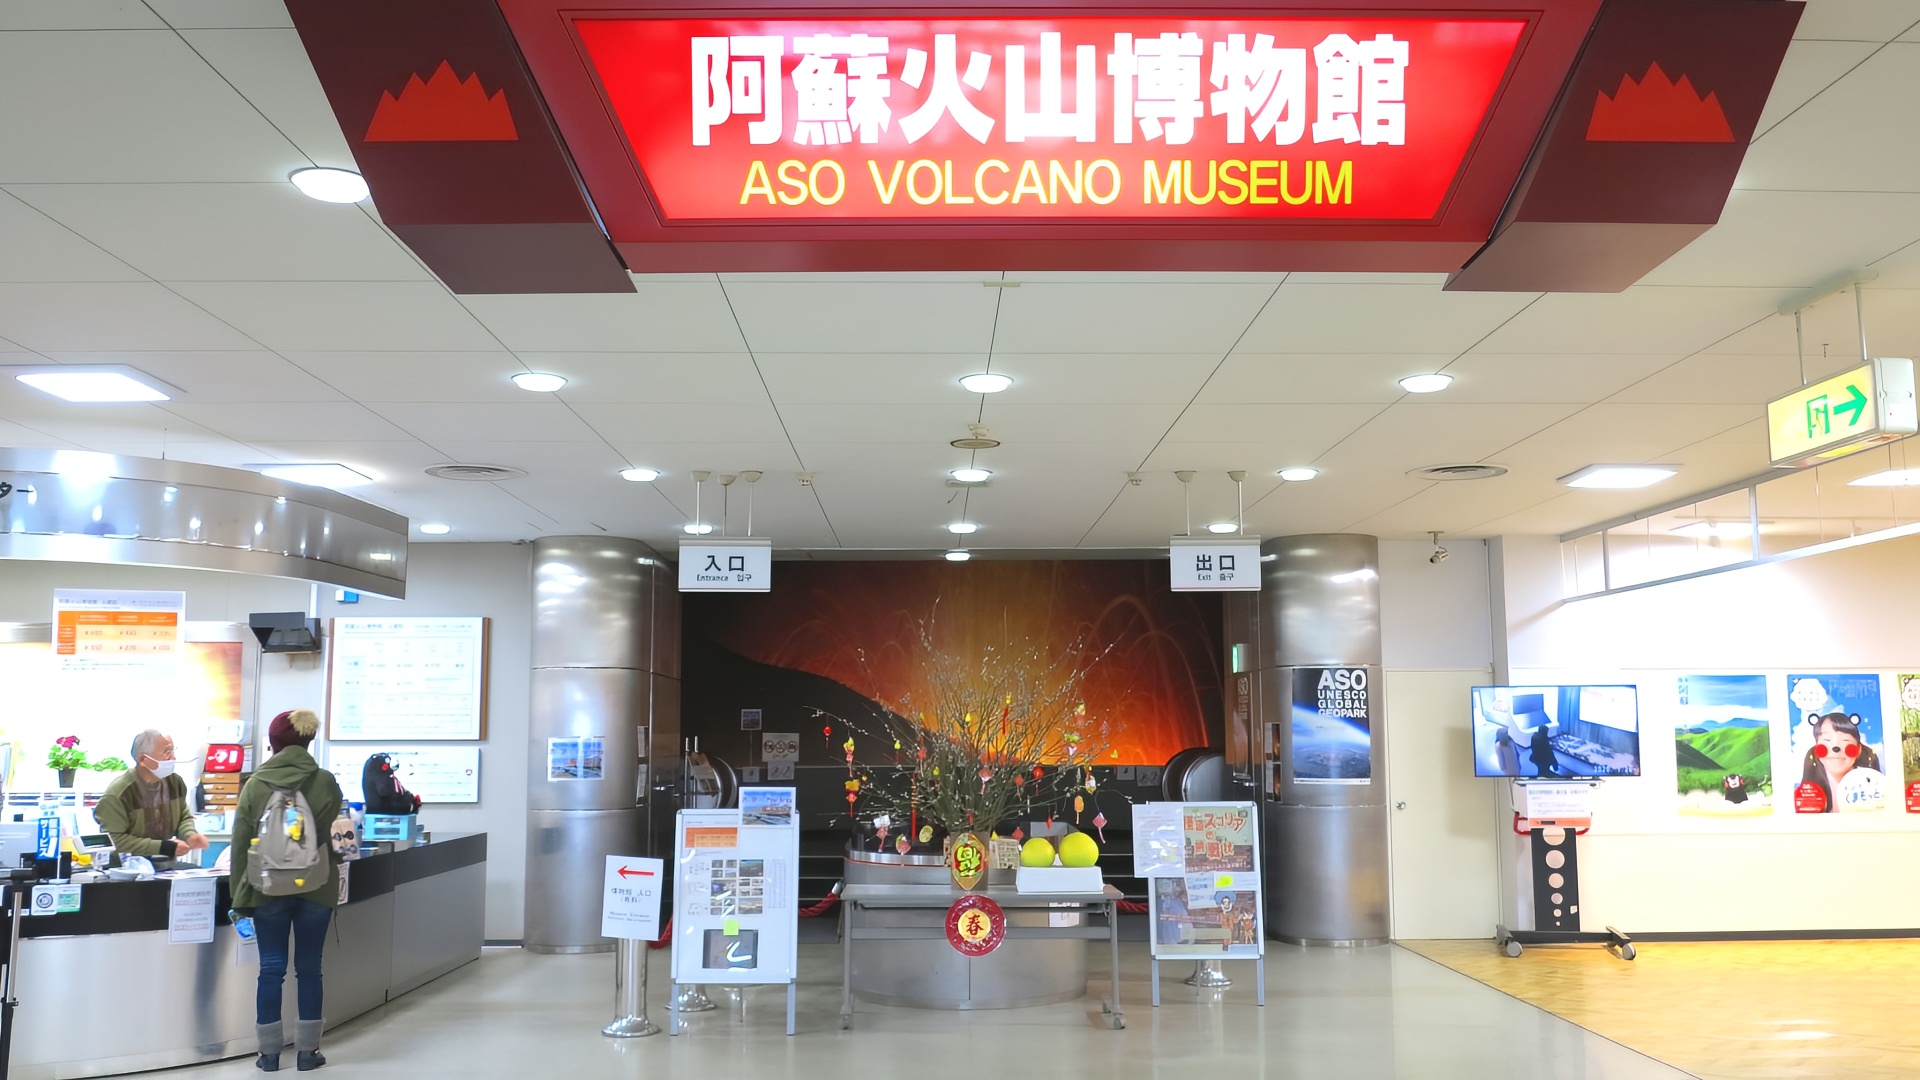 熊本丨阿苏火山博物馆